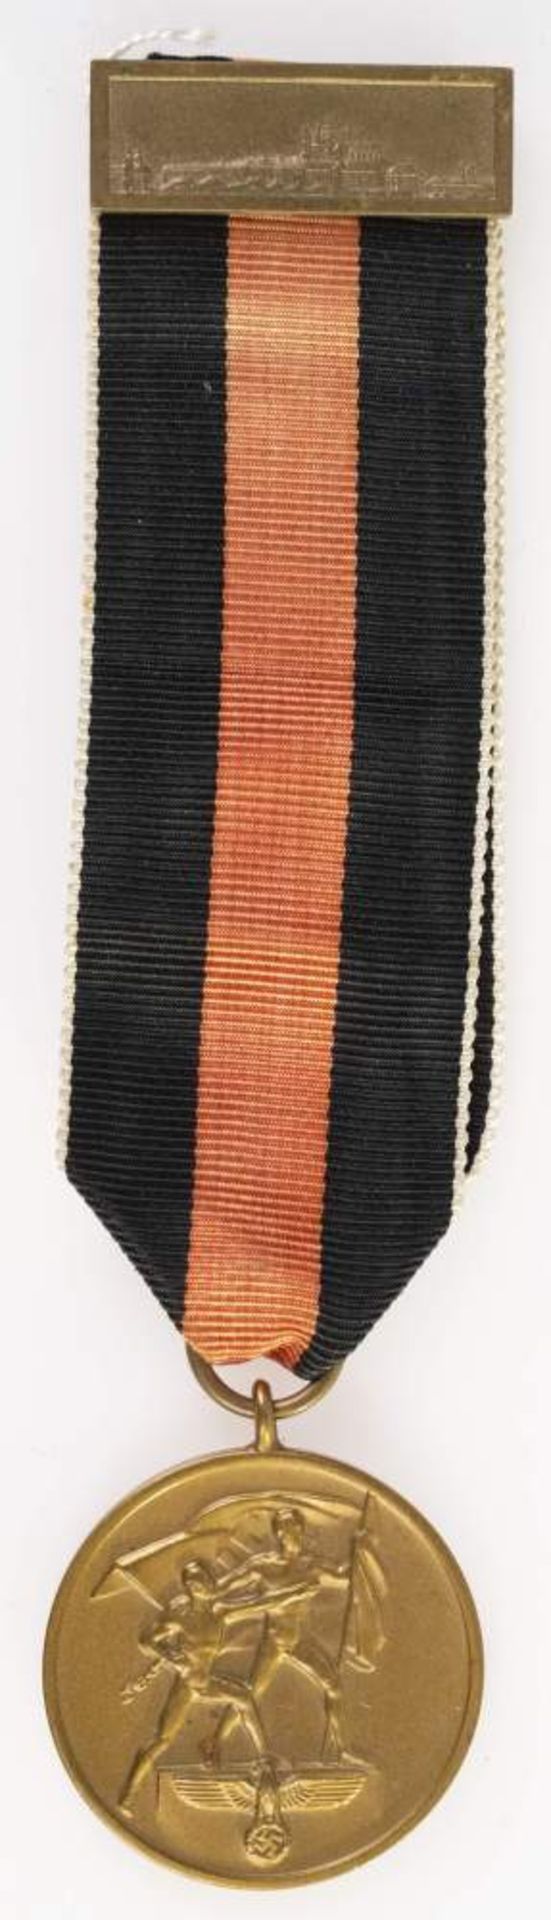 Sudetenland Medaille zur Erinnerung an den 1. Oktober 1938 mit Spange Prager Burg, am Band, OEK